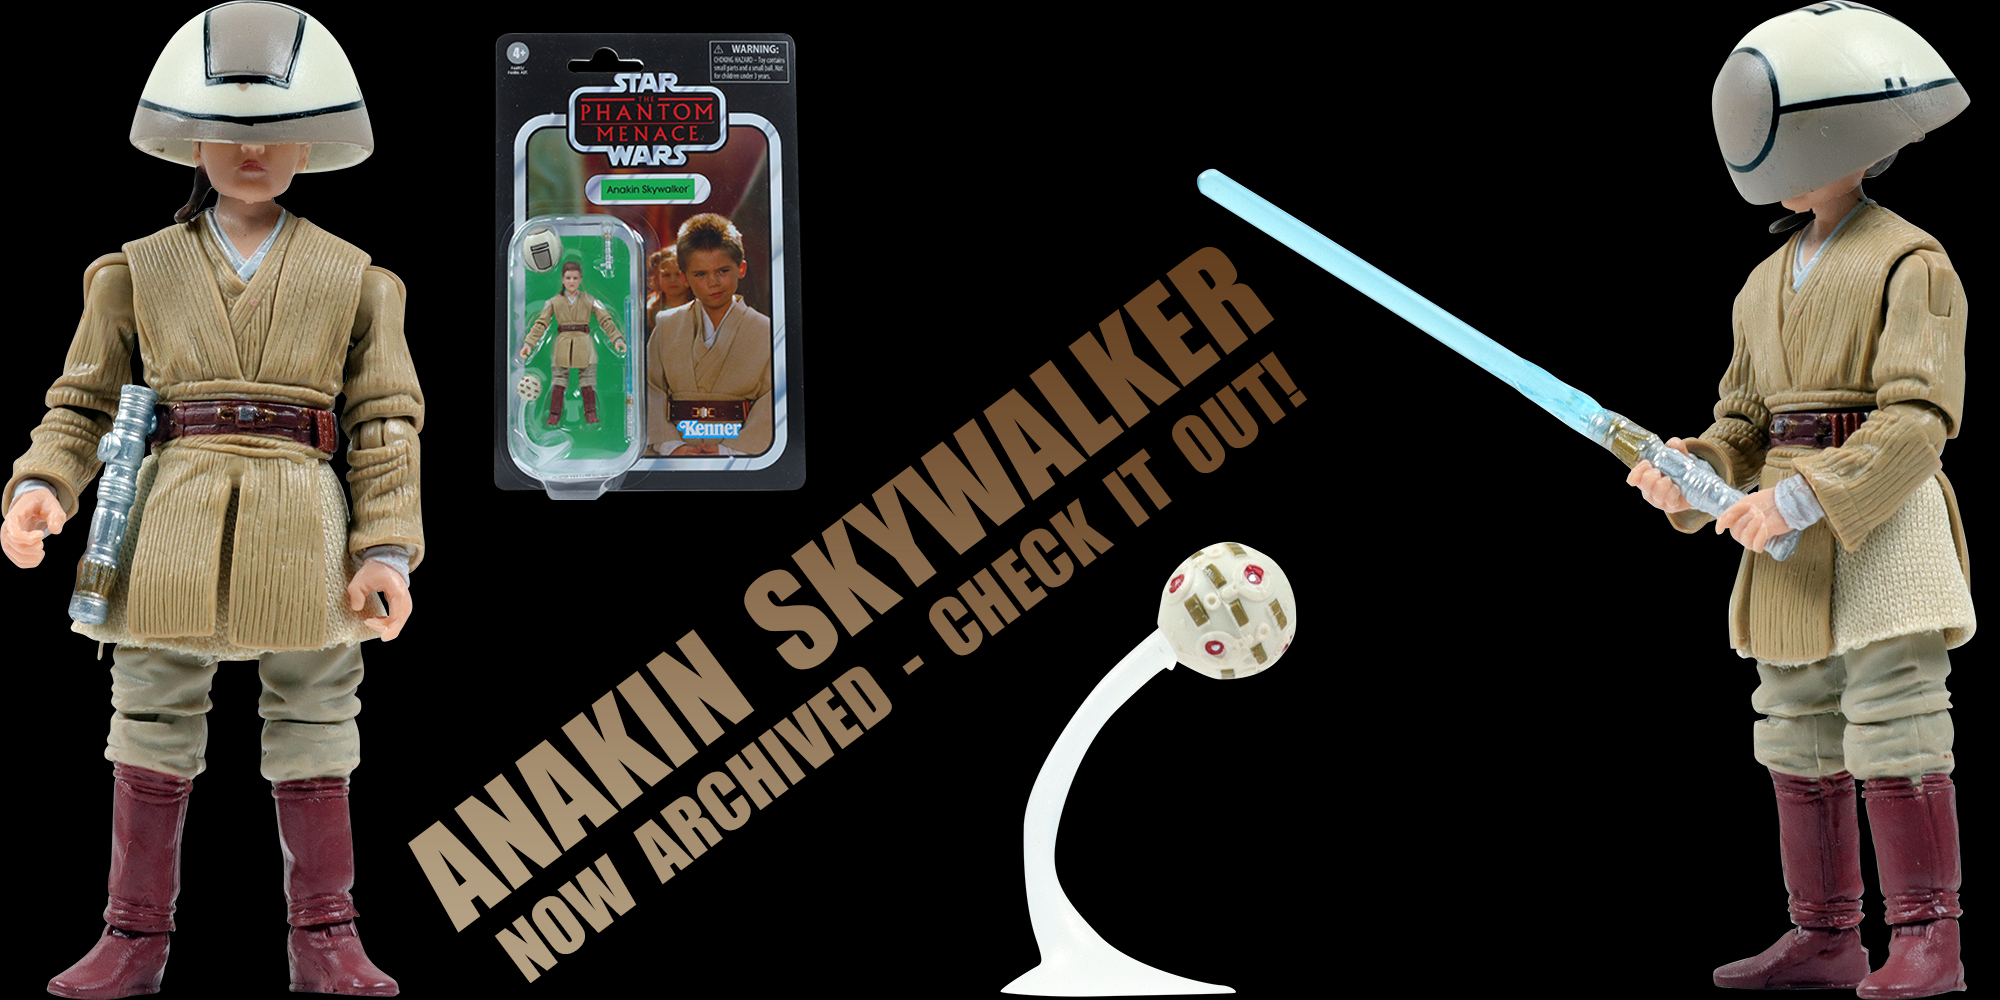 Anakin Skywalker VC80